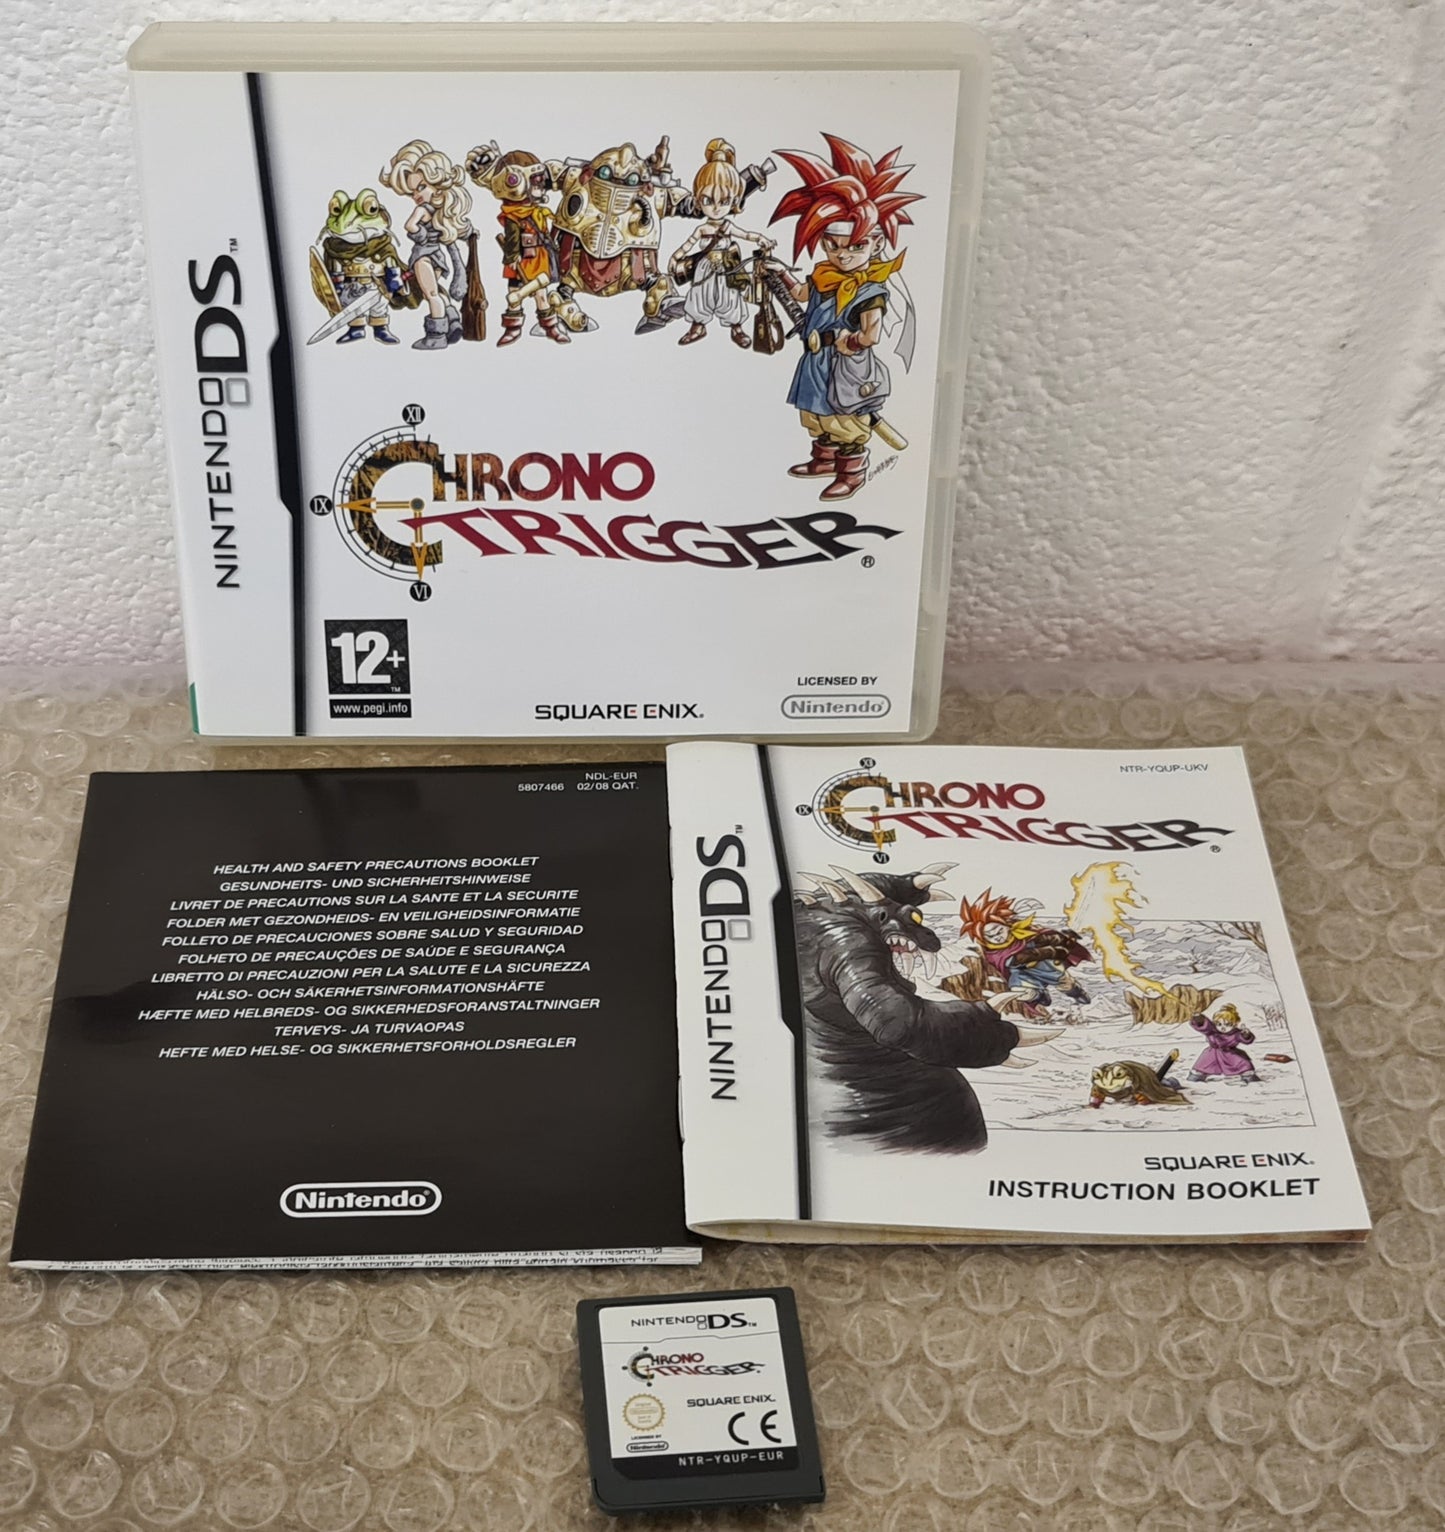 Chrono Trigger Nintendo DS Game